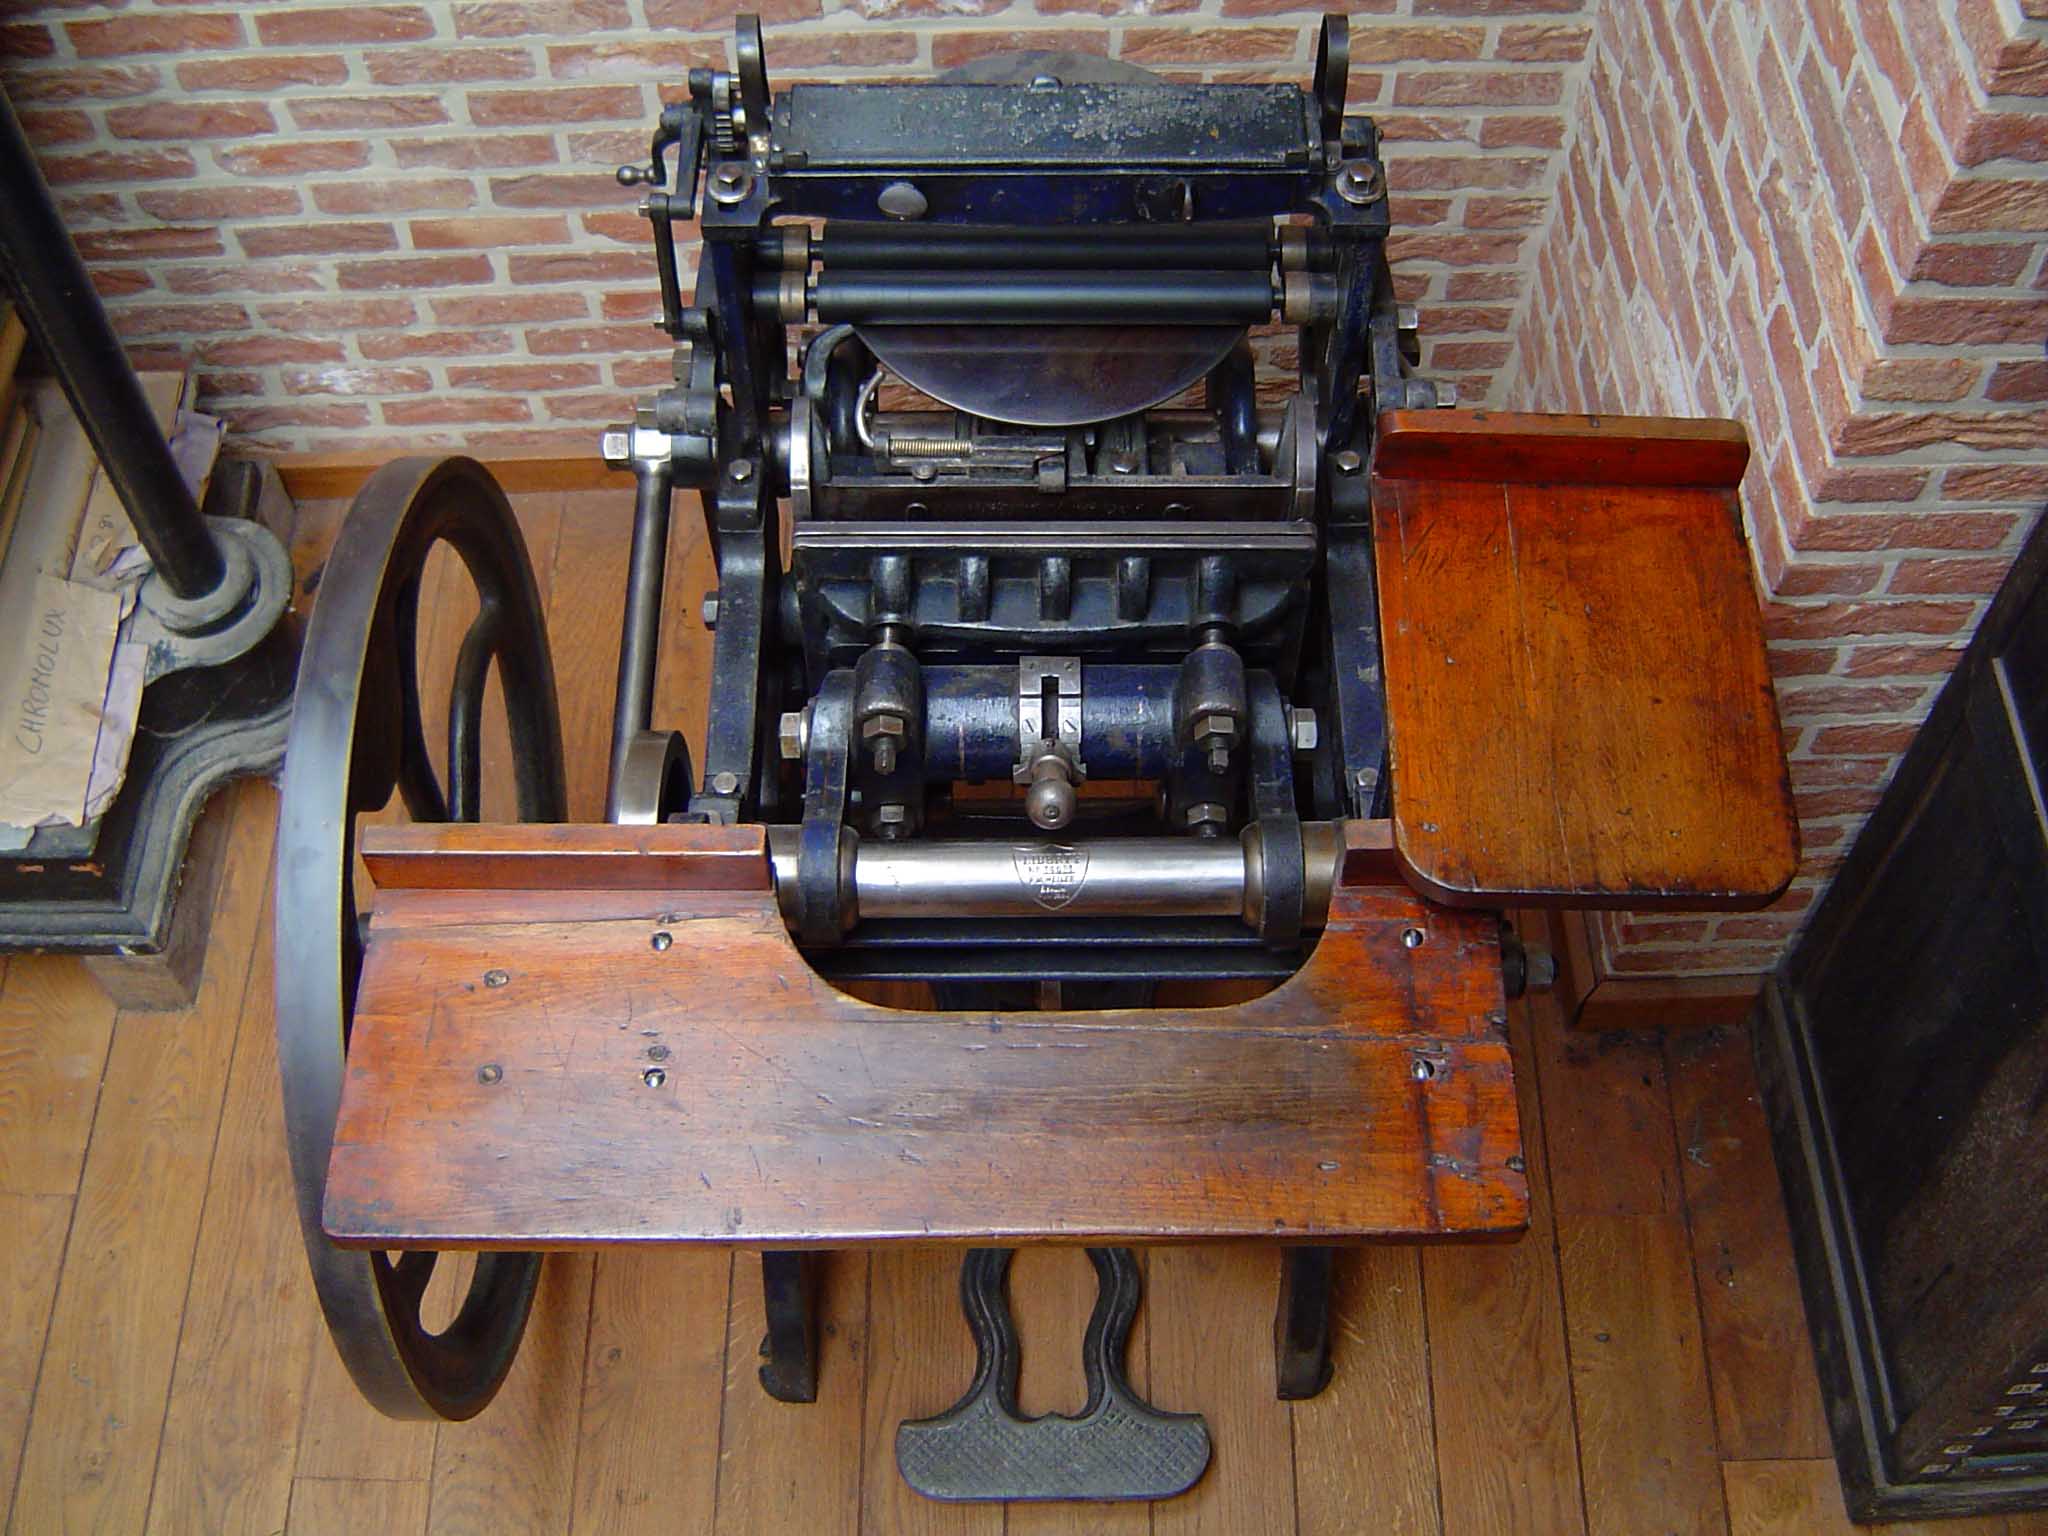 Herwig Kempenaers' Liberty press